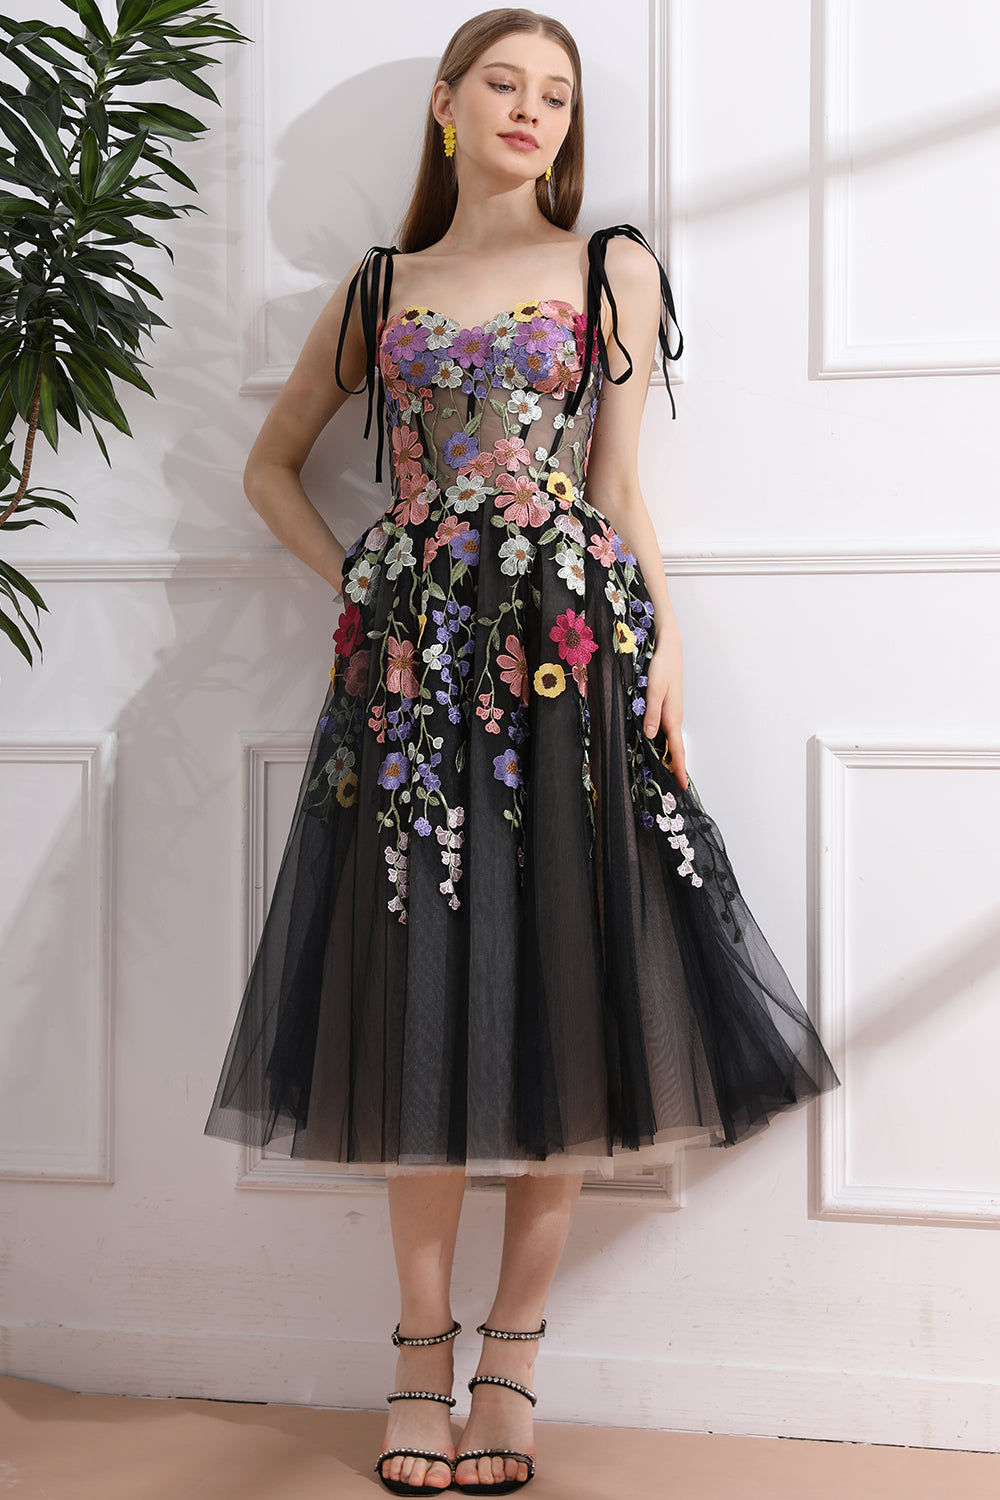 Colorful Applique Floral Corset Black Dress with Tie Straps